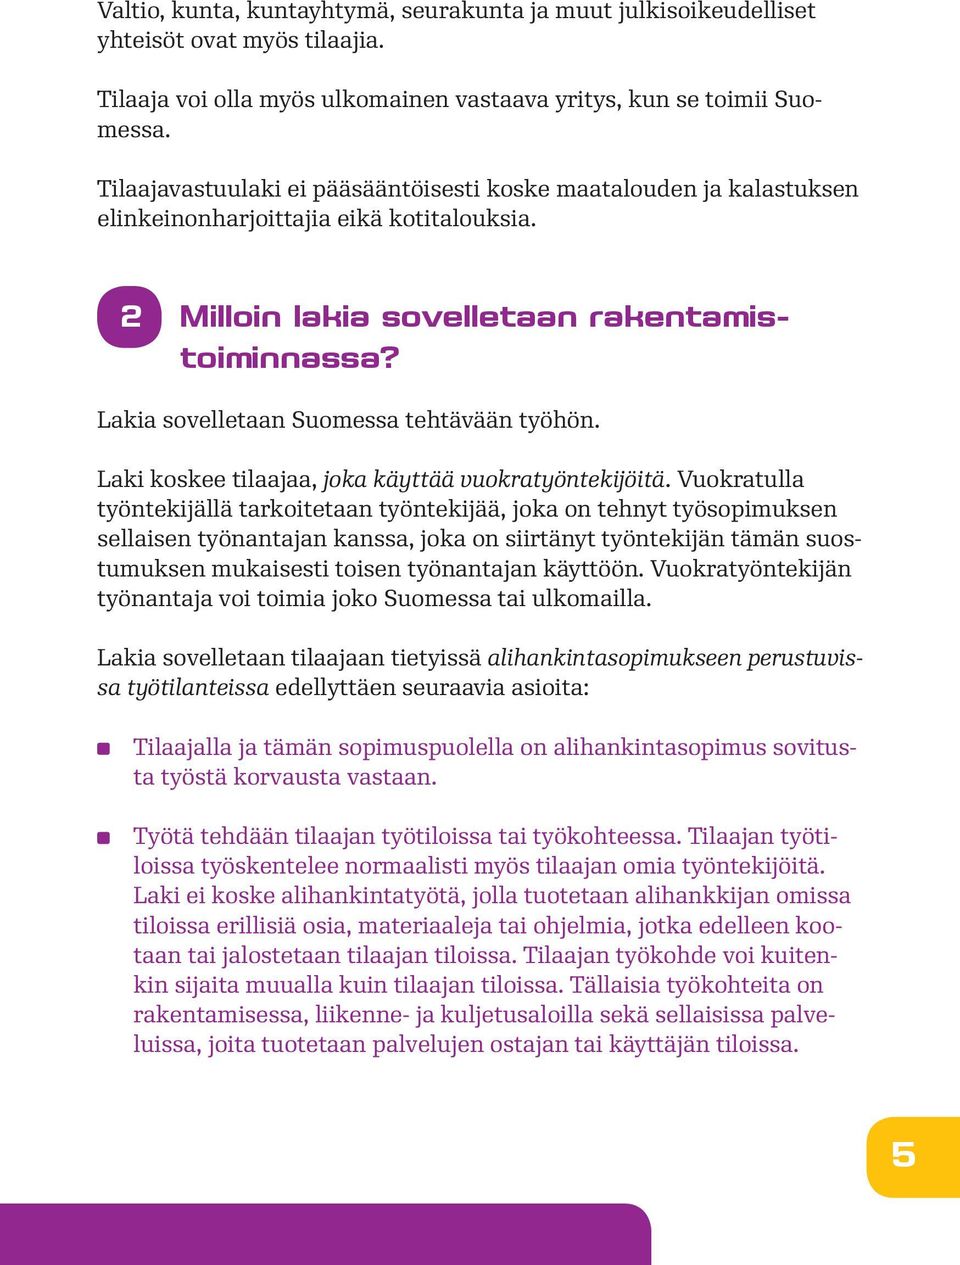 Lakia sovelletaan Suomessa tehtävään työhön. Laki koskee tilaajaa, joka käyttää vuokratyöntekijöitä.